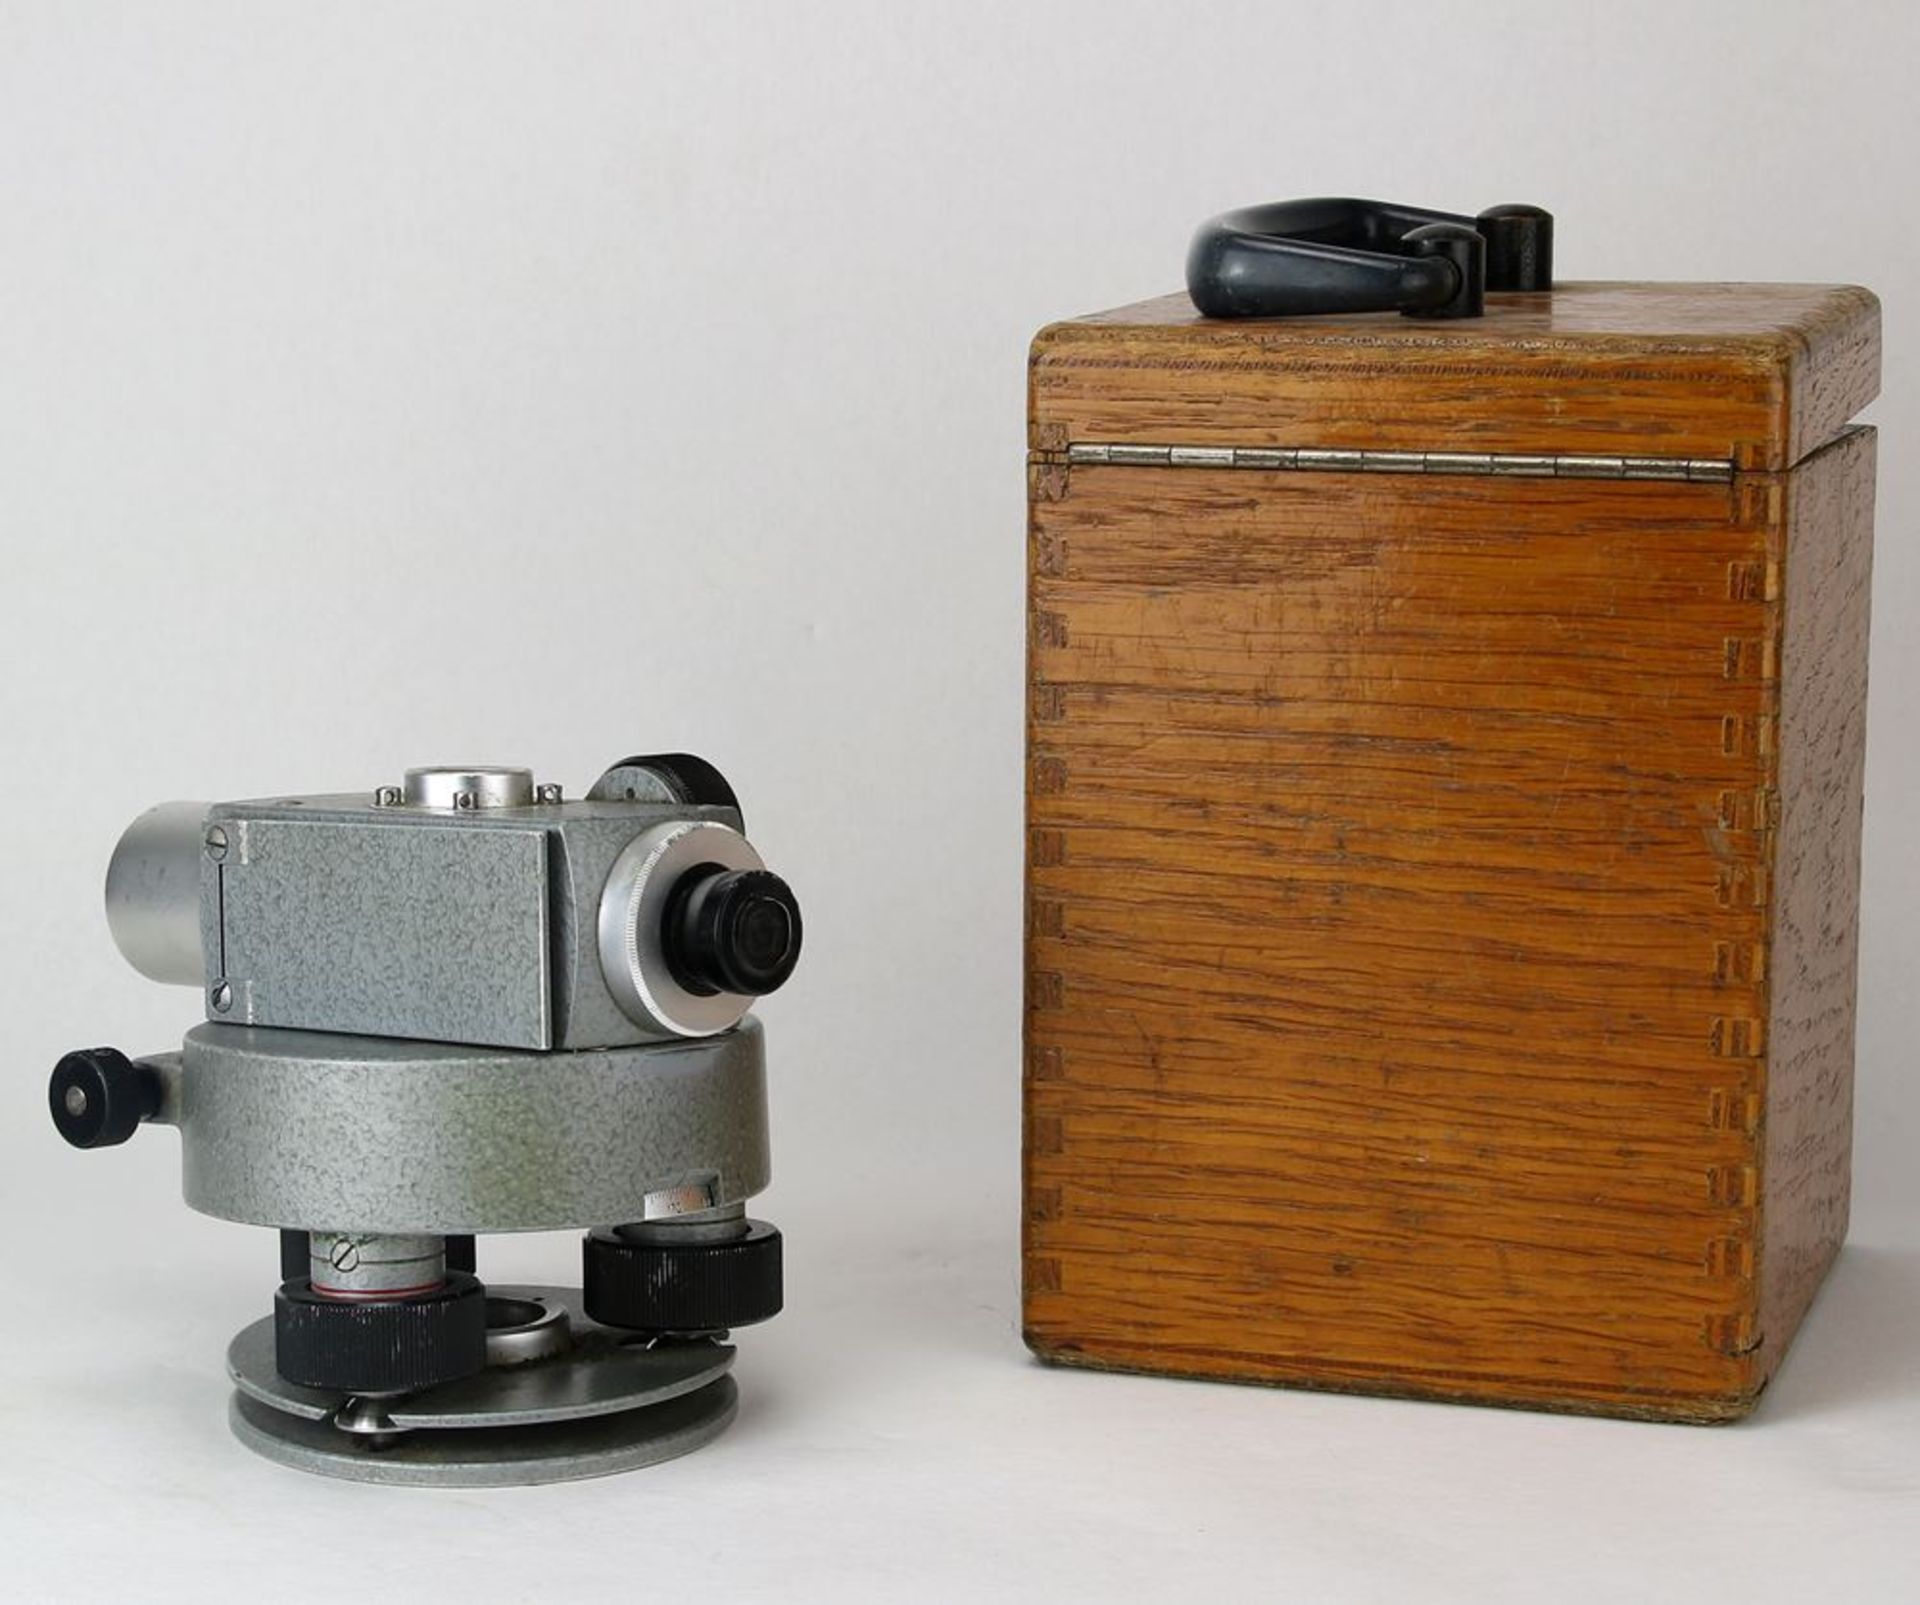 TheodolitCarl Zeiss 20. Jh. In der originalen Holzbox. Größe ca. 13 x 12 cm, Höhe ca. 18,5 cm, - Bild 2 aus 7